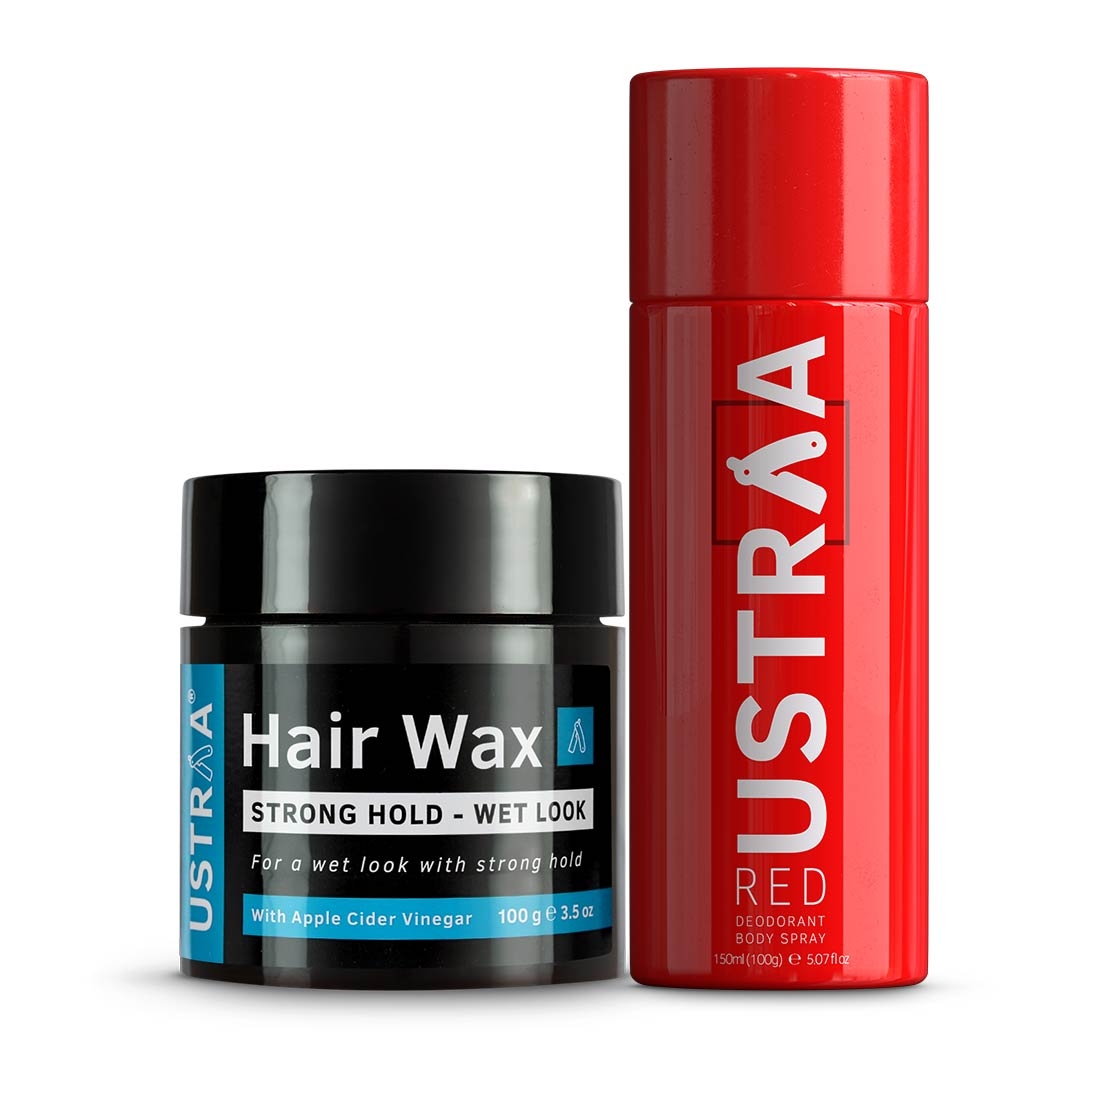 Ustraa | Ustraaa Red Deodorant 150ml & Hair Wax Wet Look 100g 0